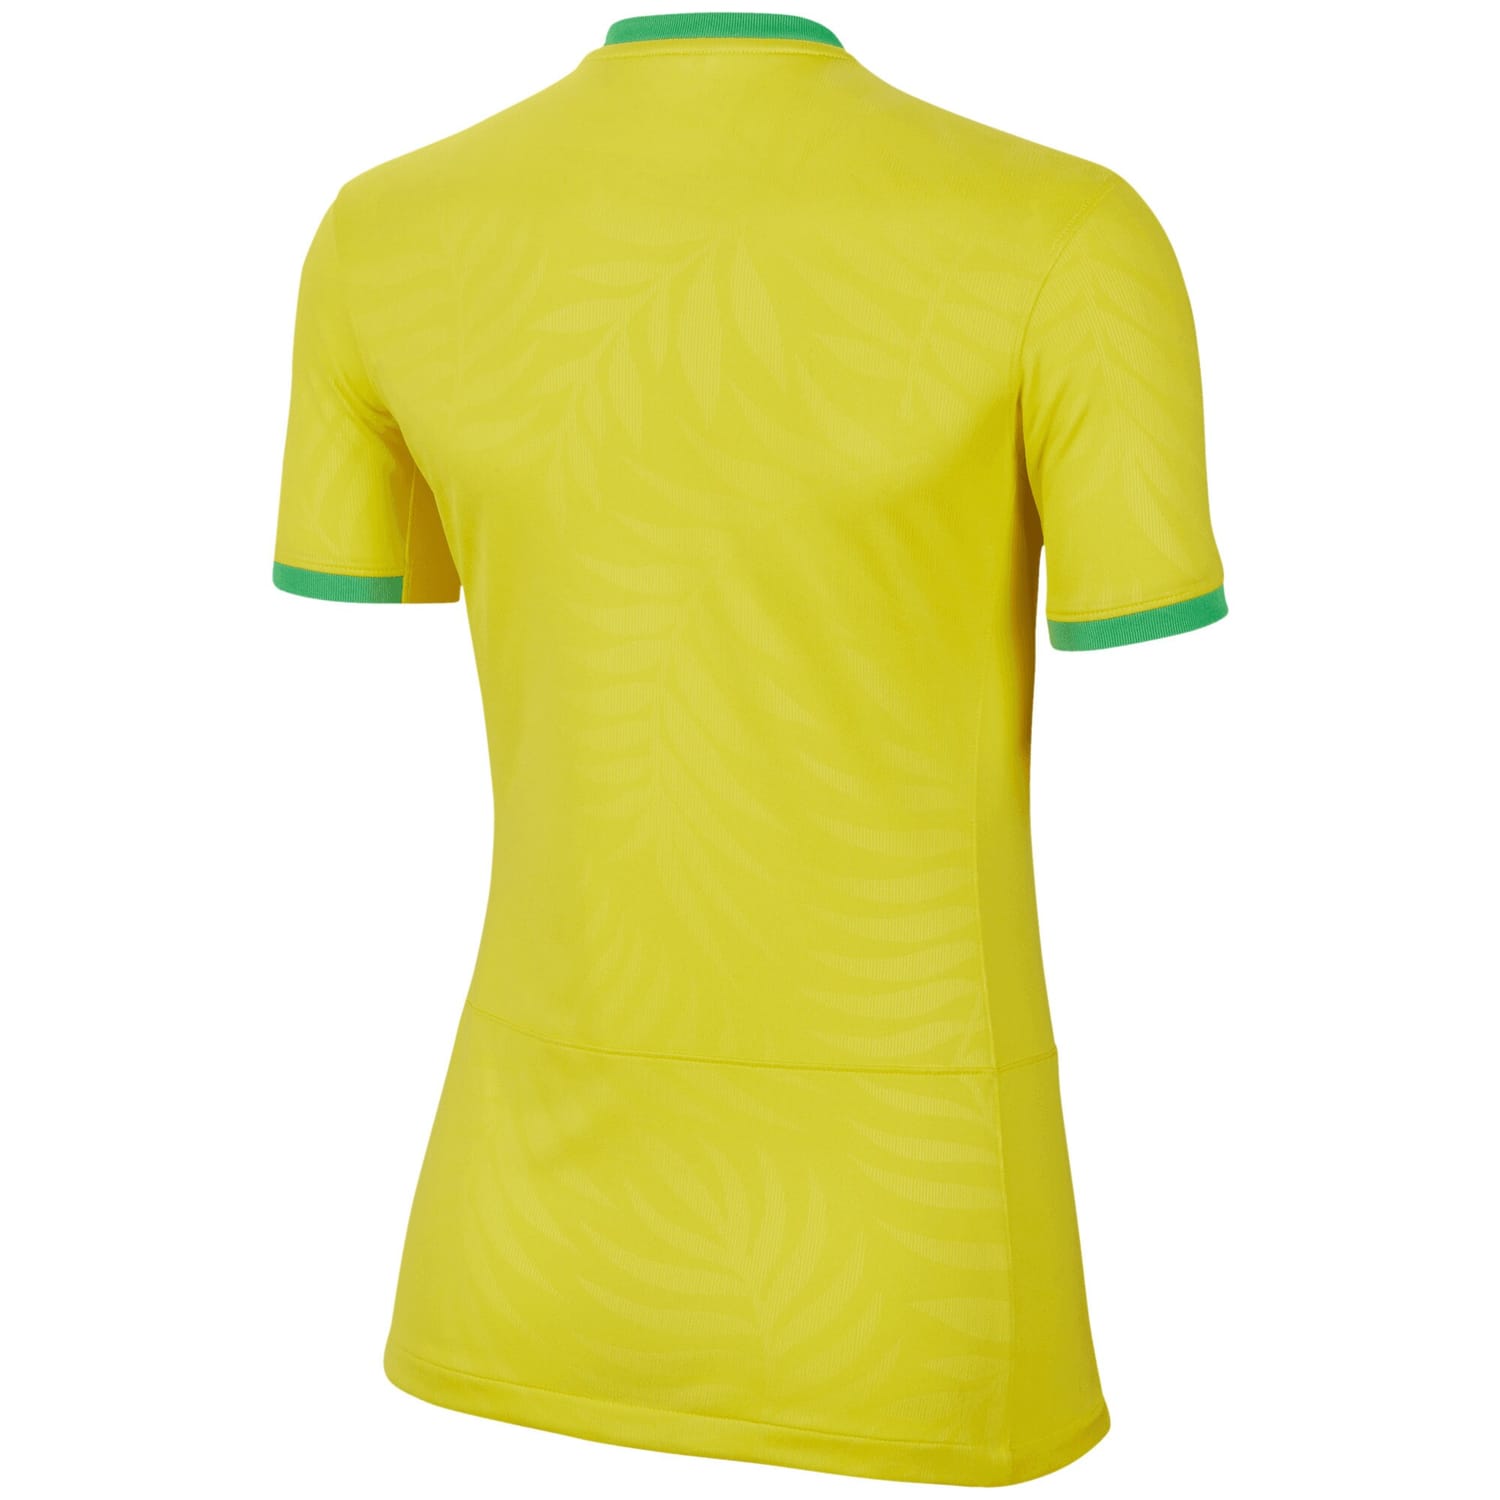 Brazil National Team Home Jersey Shirt 2023-24 for Women